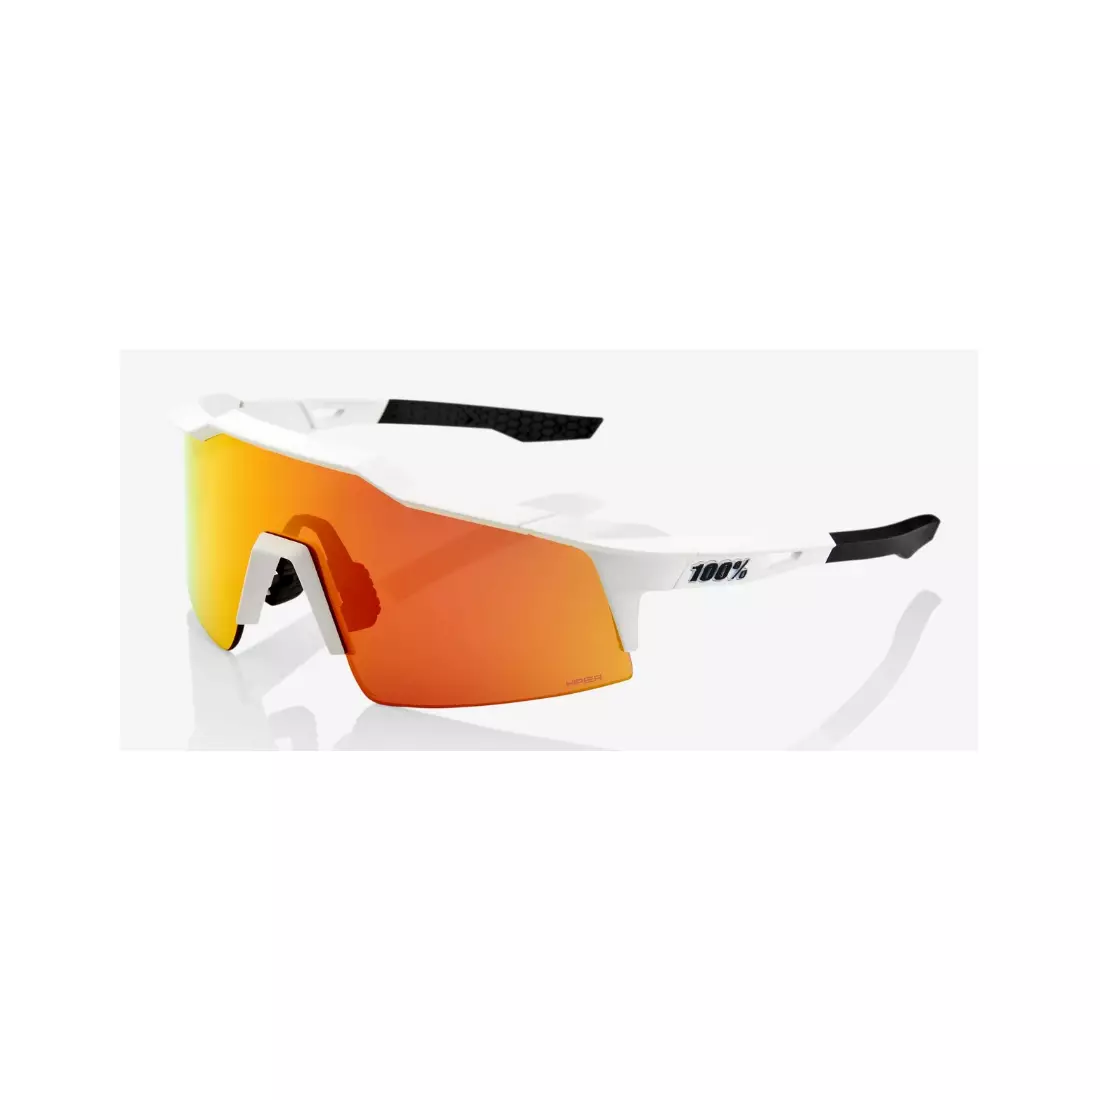 100% ochelari sportivi SPEEDCRAFT SL (HiPER Red Multilayer Mirror Lens) Soft Tact Off White STO-61002-412-01